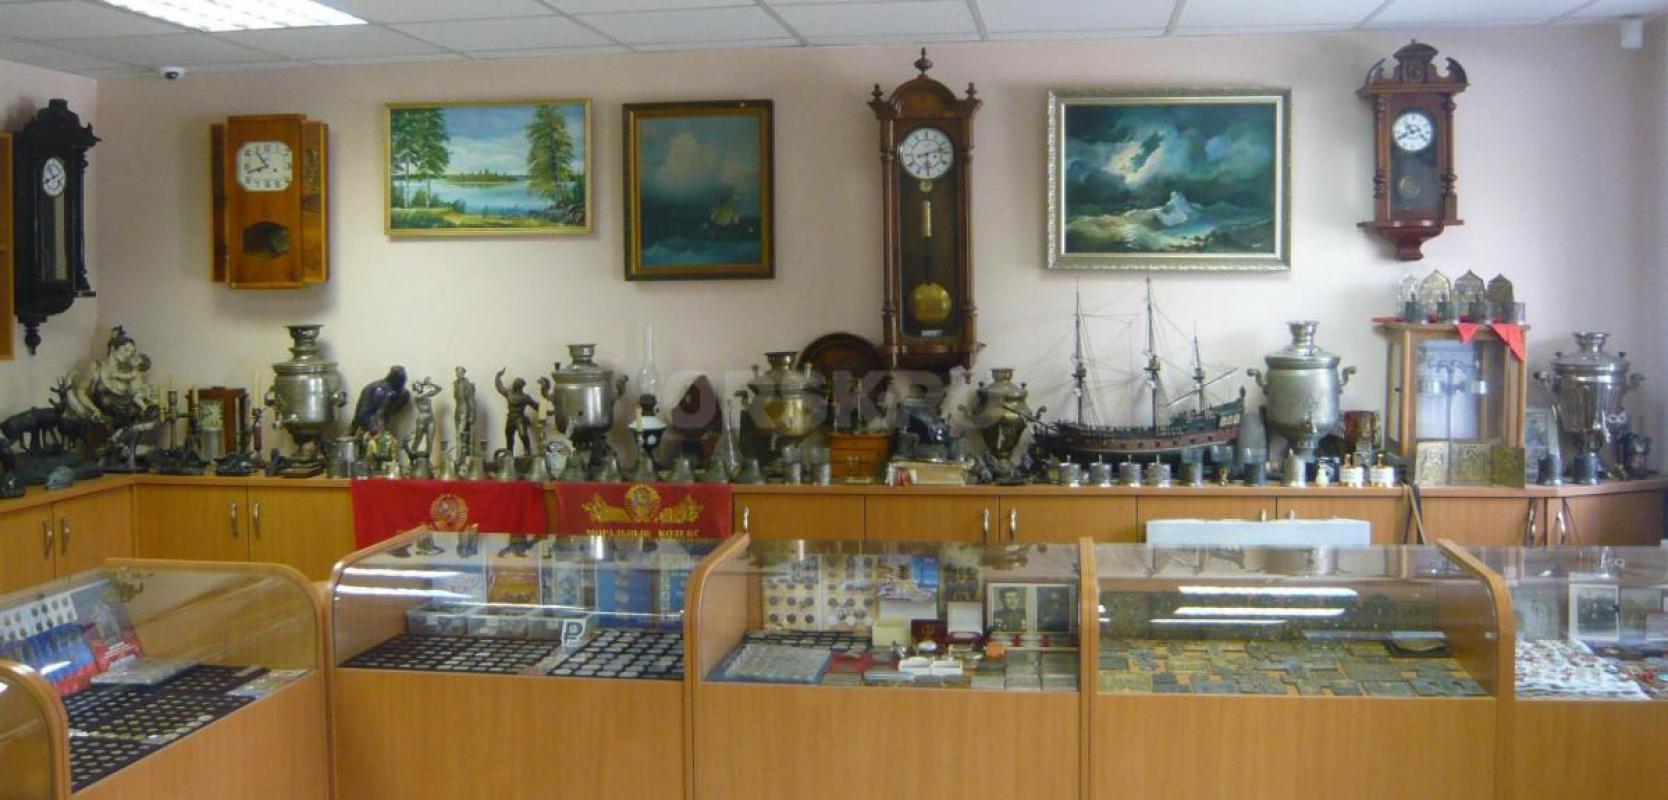 Магазин "АНТИКВАРИАТ" покупает предметы старины, медали, награды, монеты до 1917 года, Кас - Орск